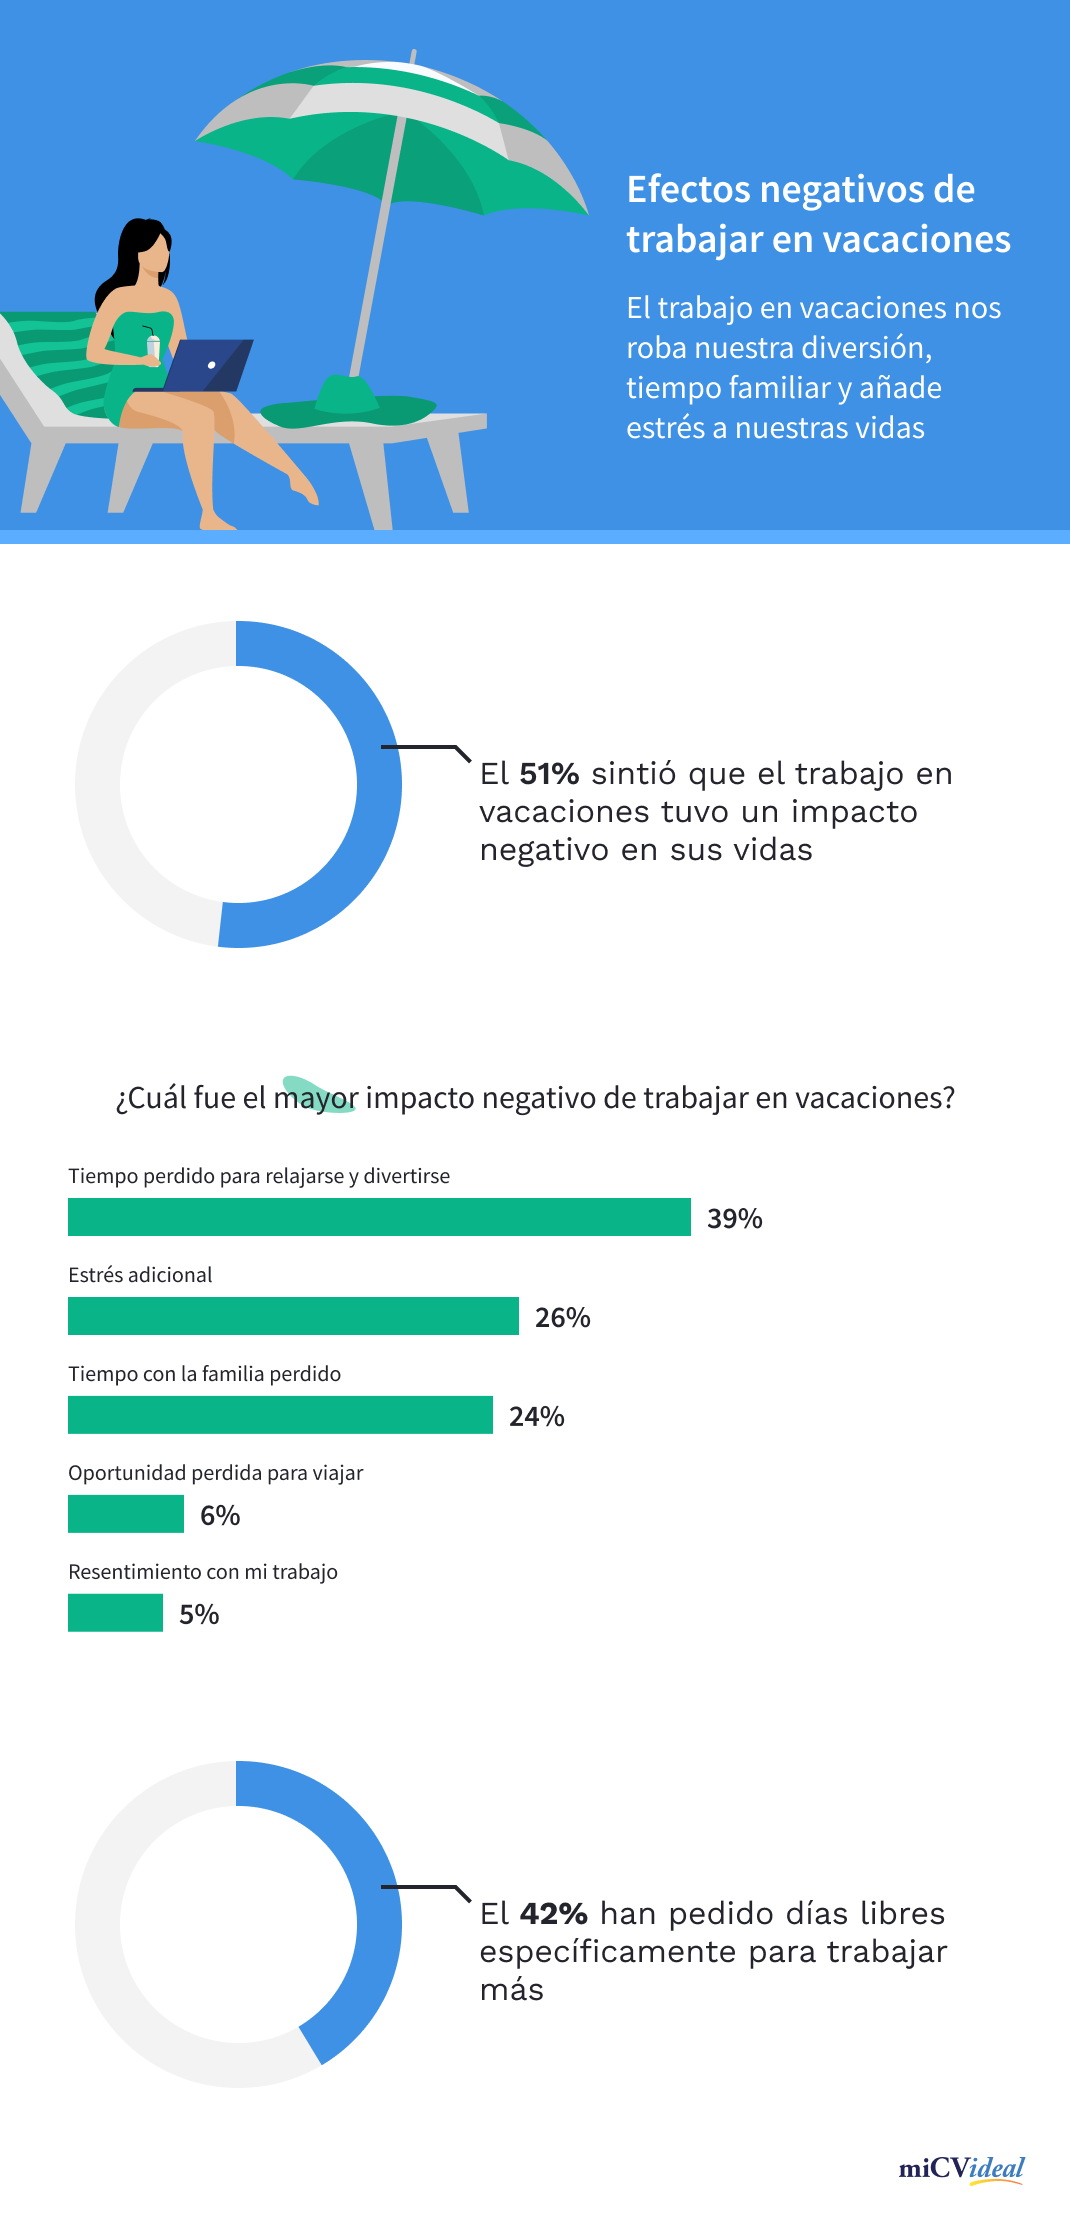 Efectos negativos de trabajar en vacaciones